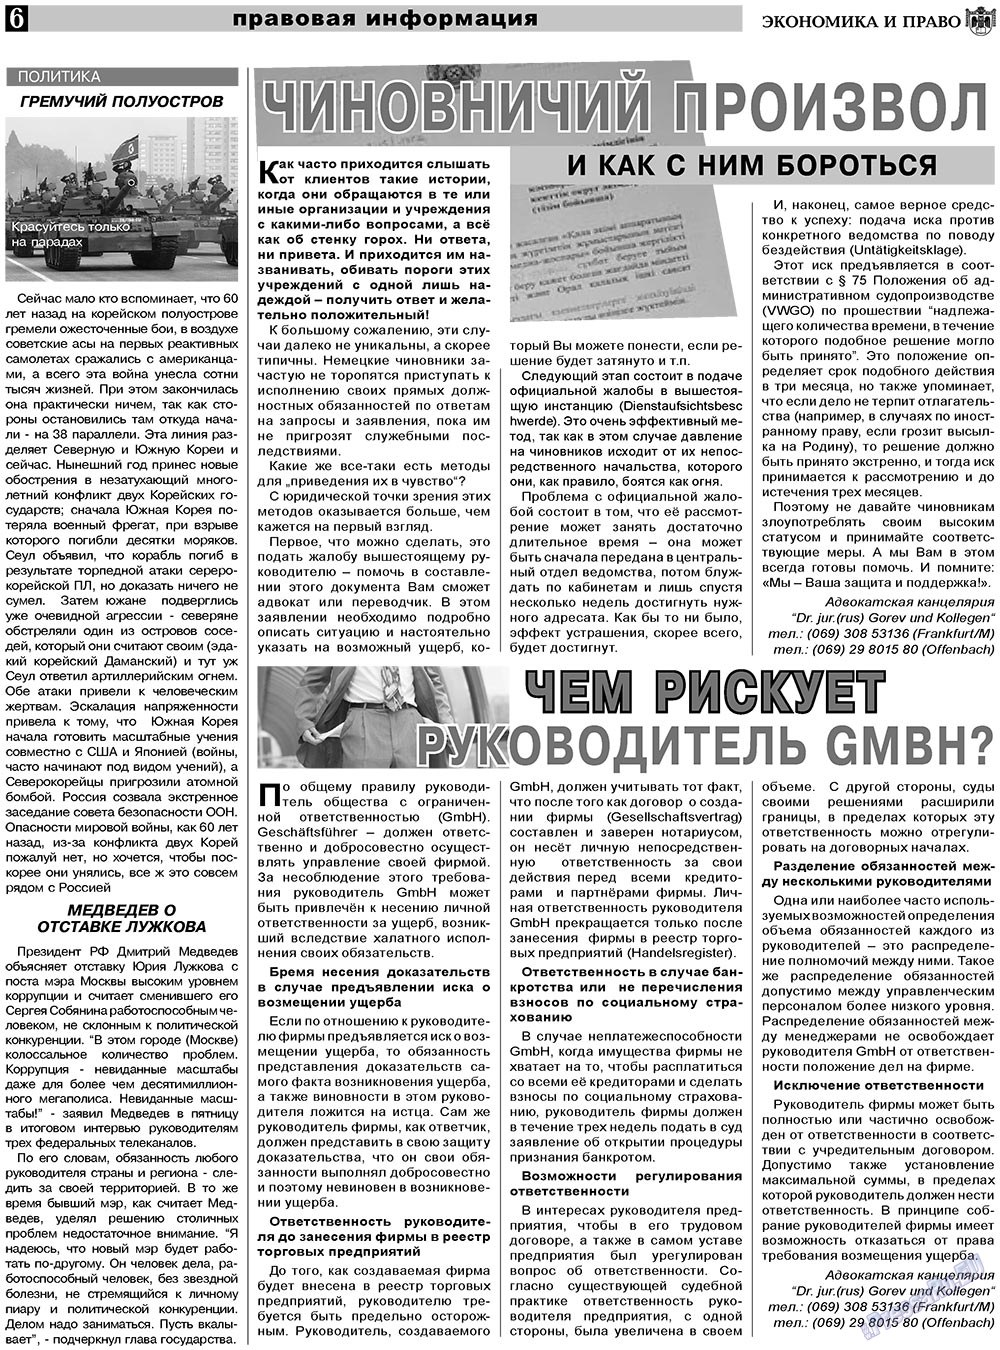 Экономика и право, газета. 2011 №1 стр.6